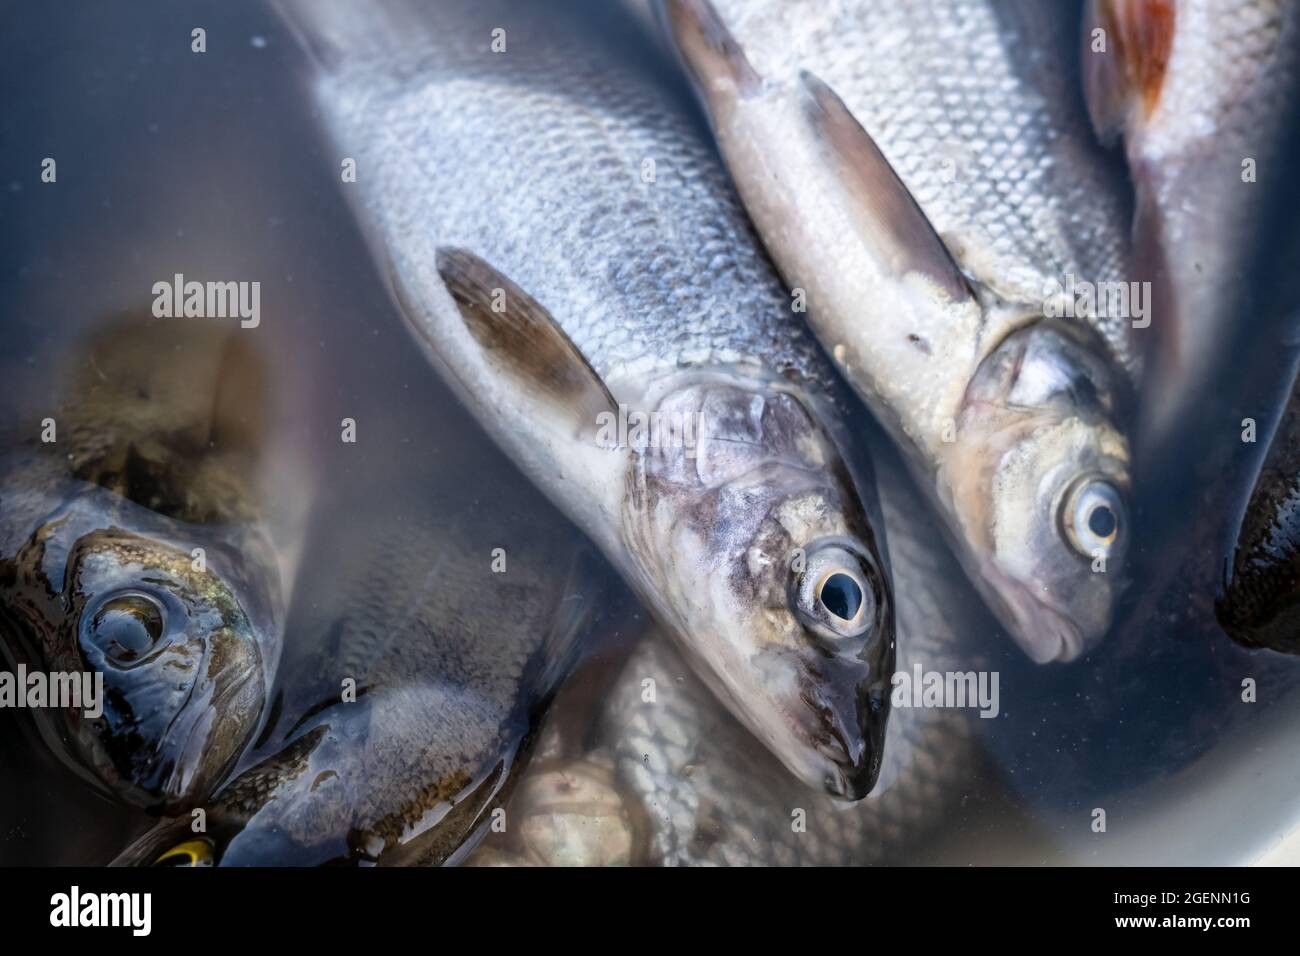 Le poisson frais pêché se trouve dans un seau d'eau. Vue de dessus. Banque D'Images